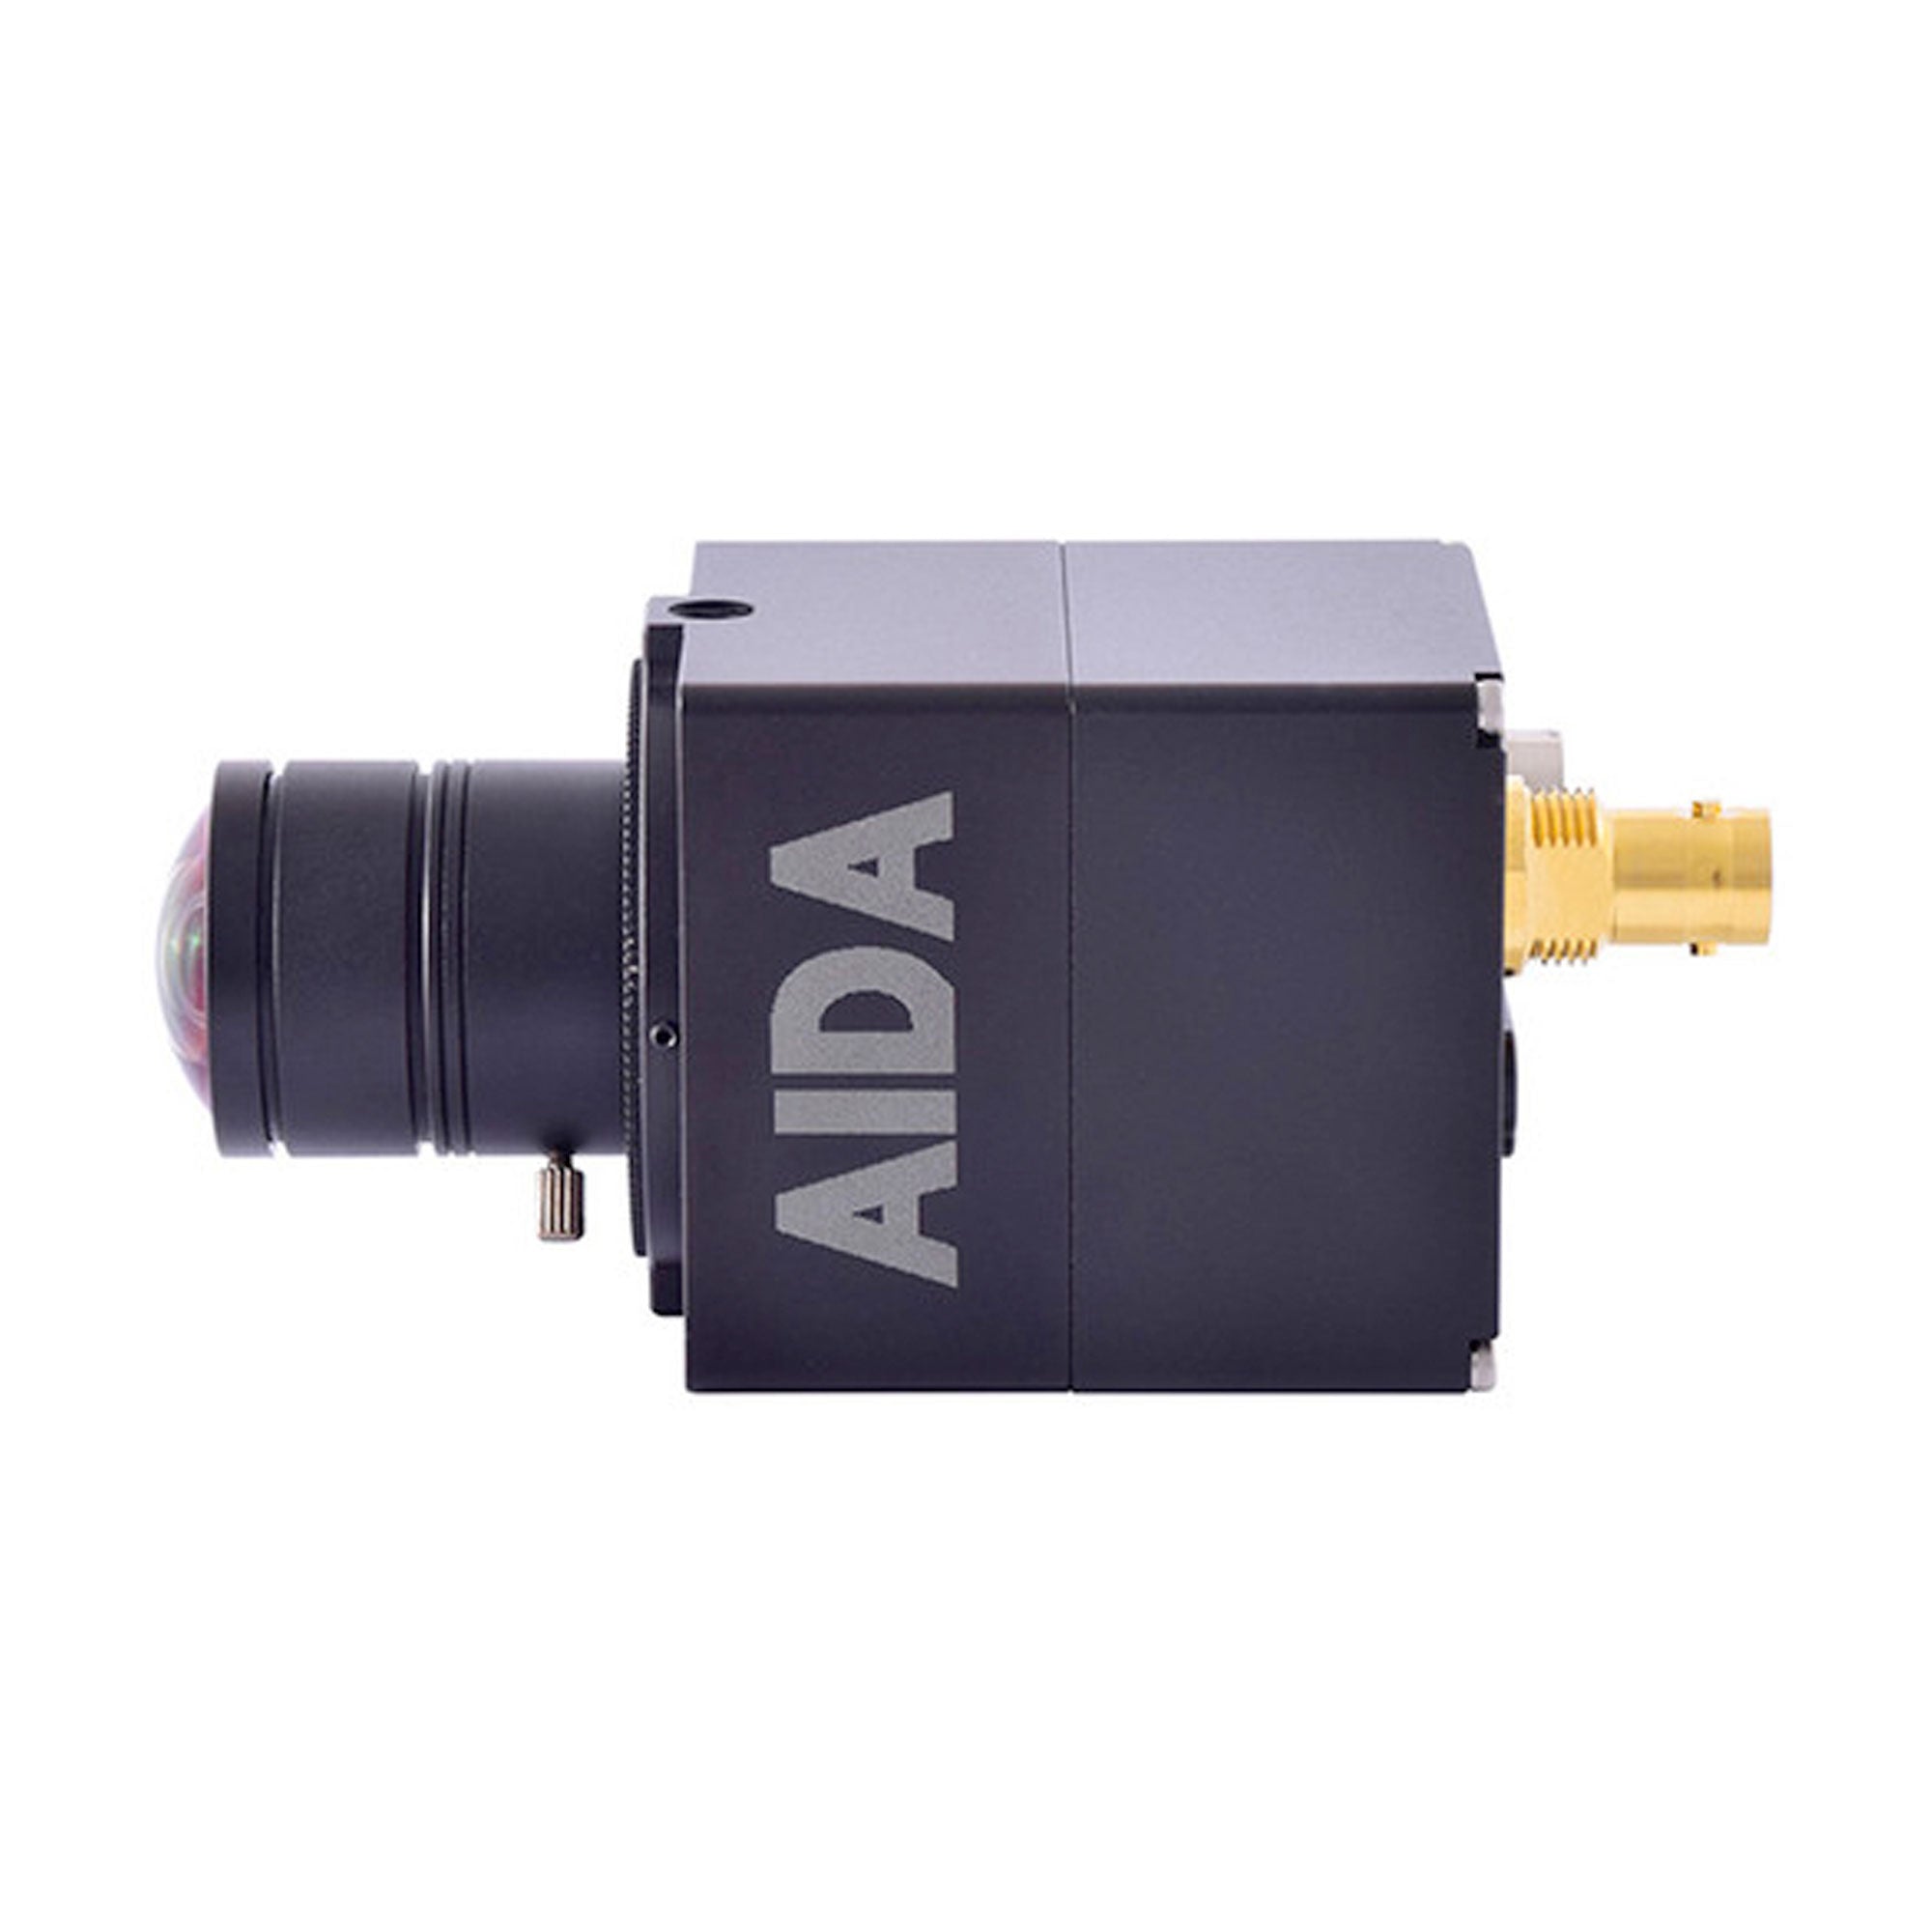 Aida Imaging UHD 4K/30 6G-SDI POV Camera